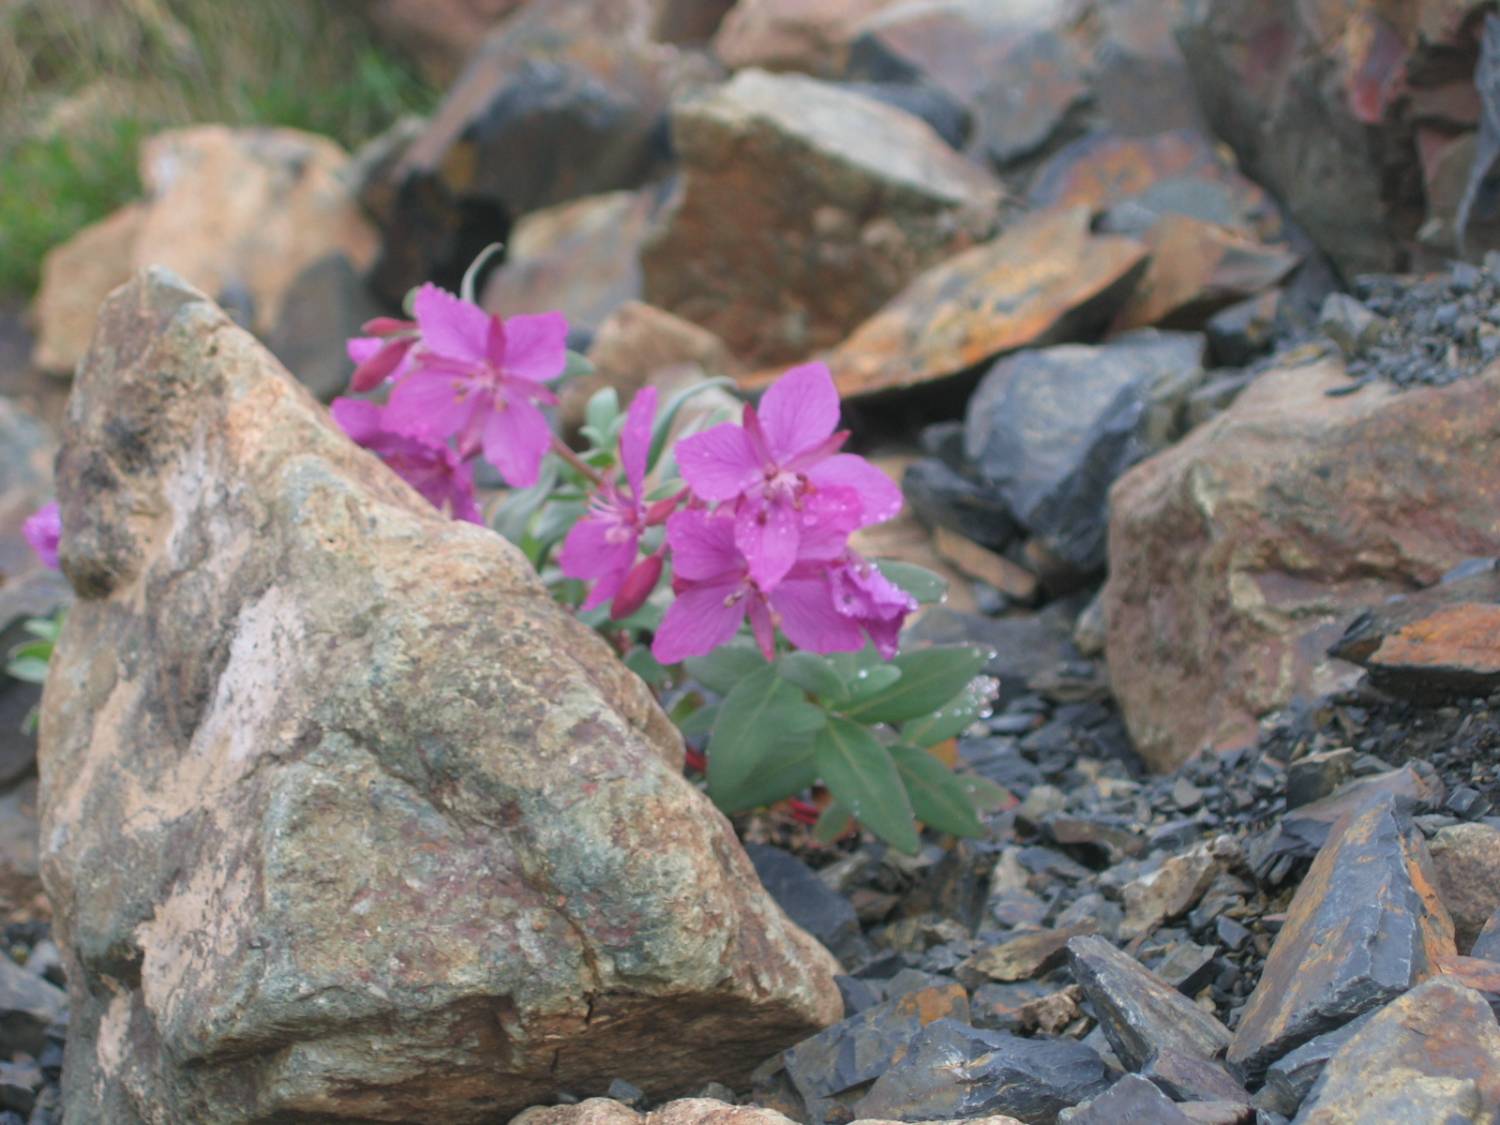 Цветок на скале